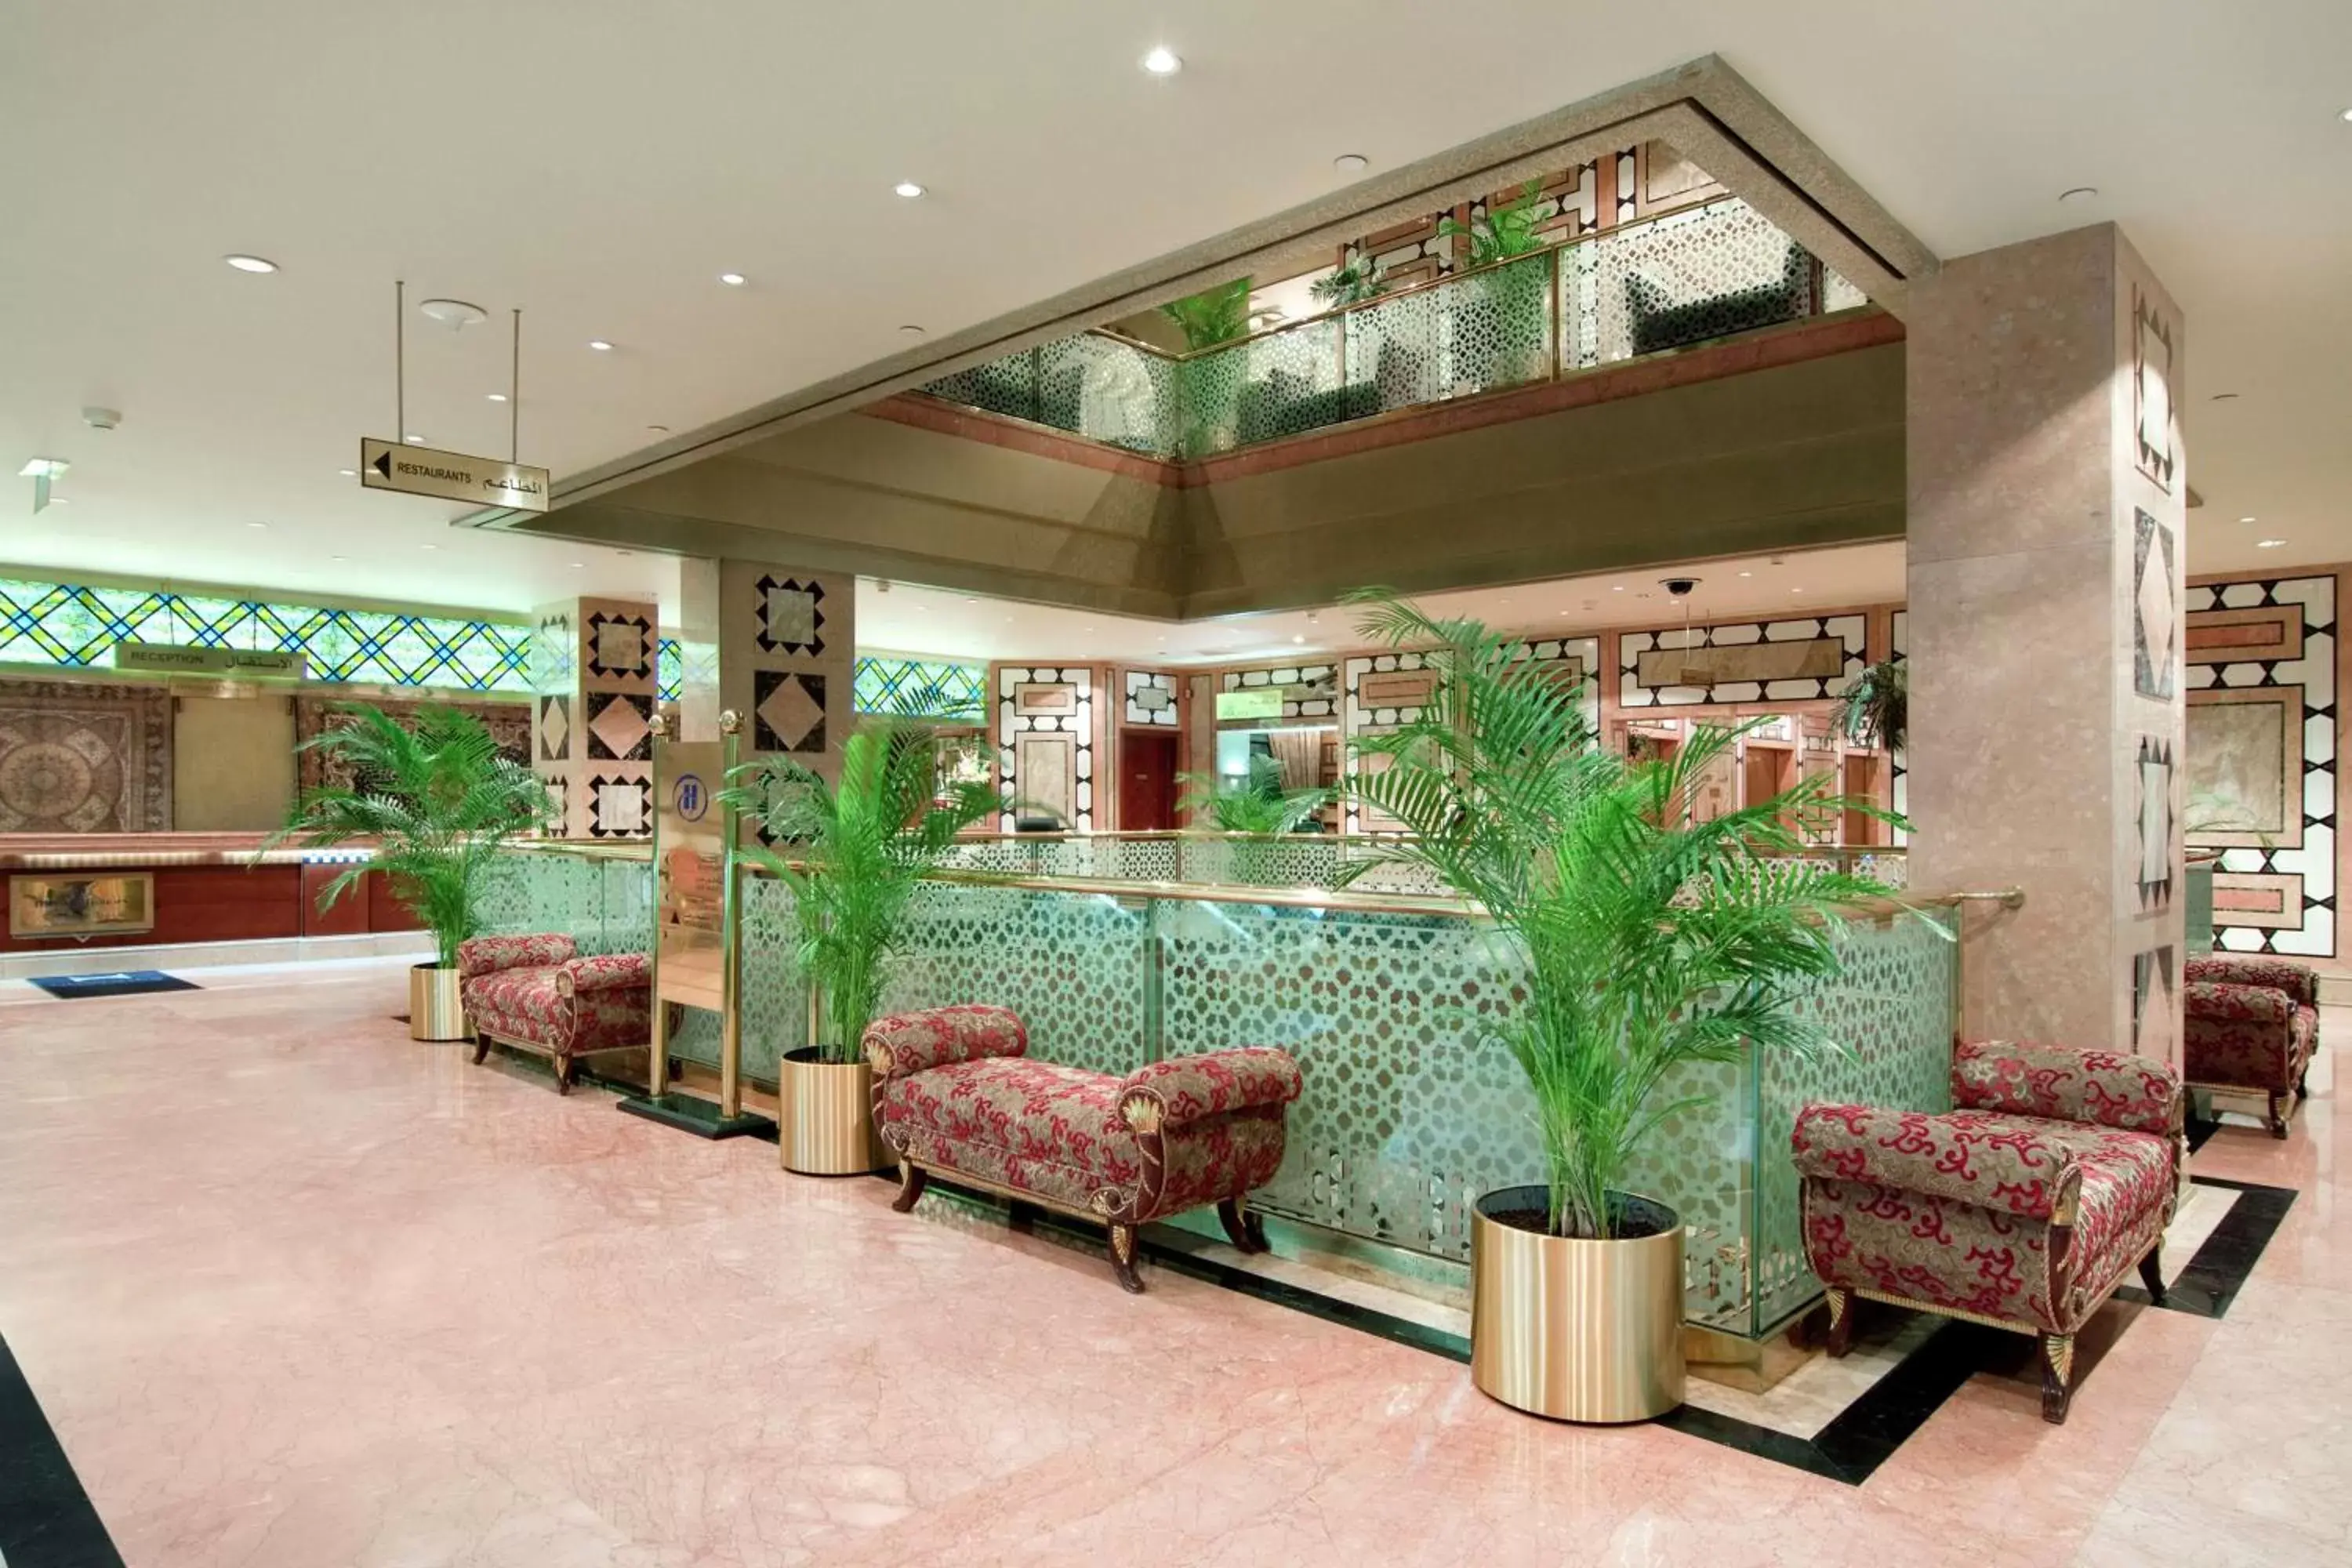 Lobby or reception, Lobby/Reception in Madinah Hilton Hotel